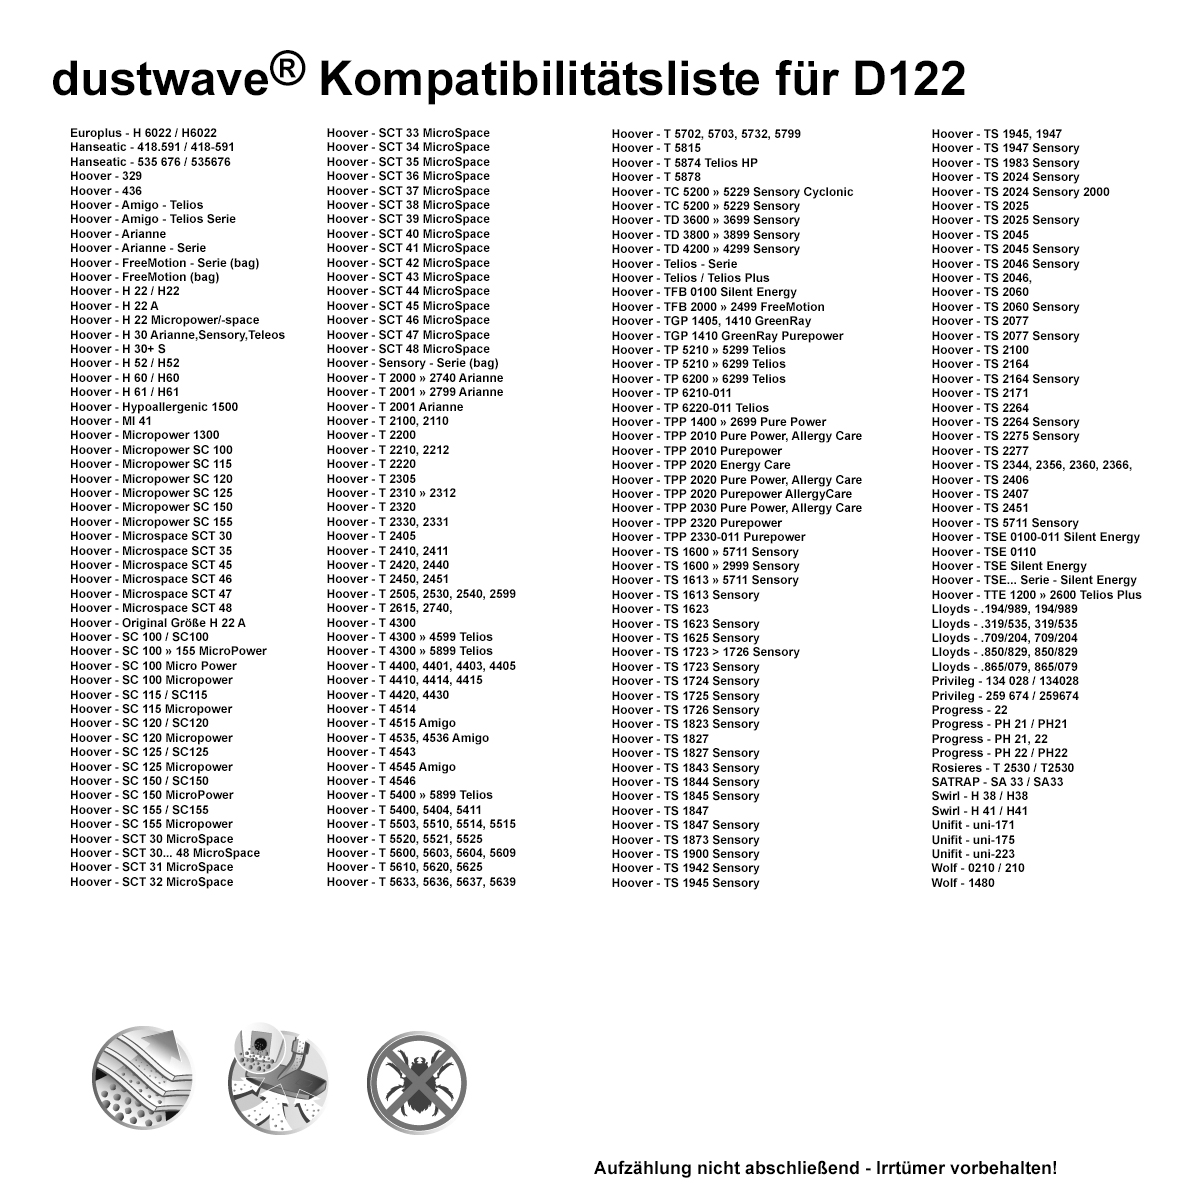 Dustwave® 10 Staubsaugerbeutel für Hoover TS1625 / TRTS1625 Sensory - hocheffizient, mehrlagiges Mikrovlies mit Hygieneverschluss - Made in Germany